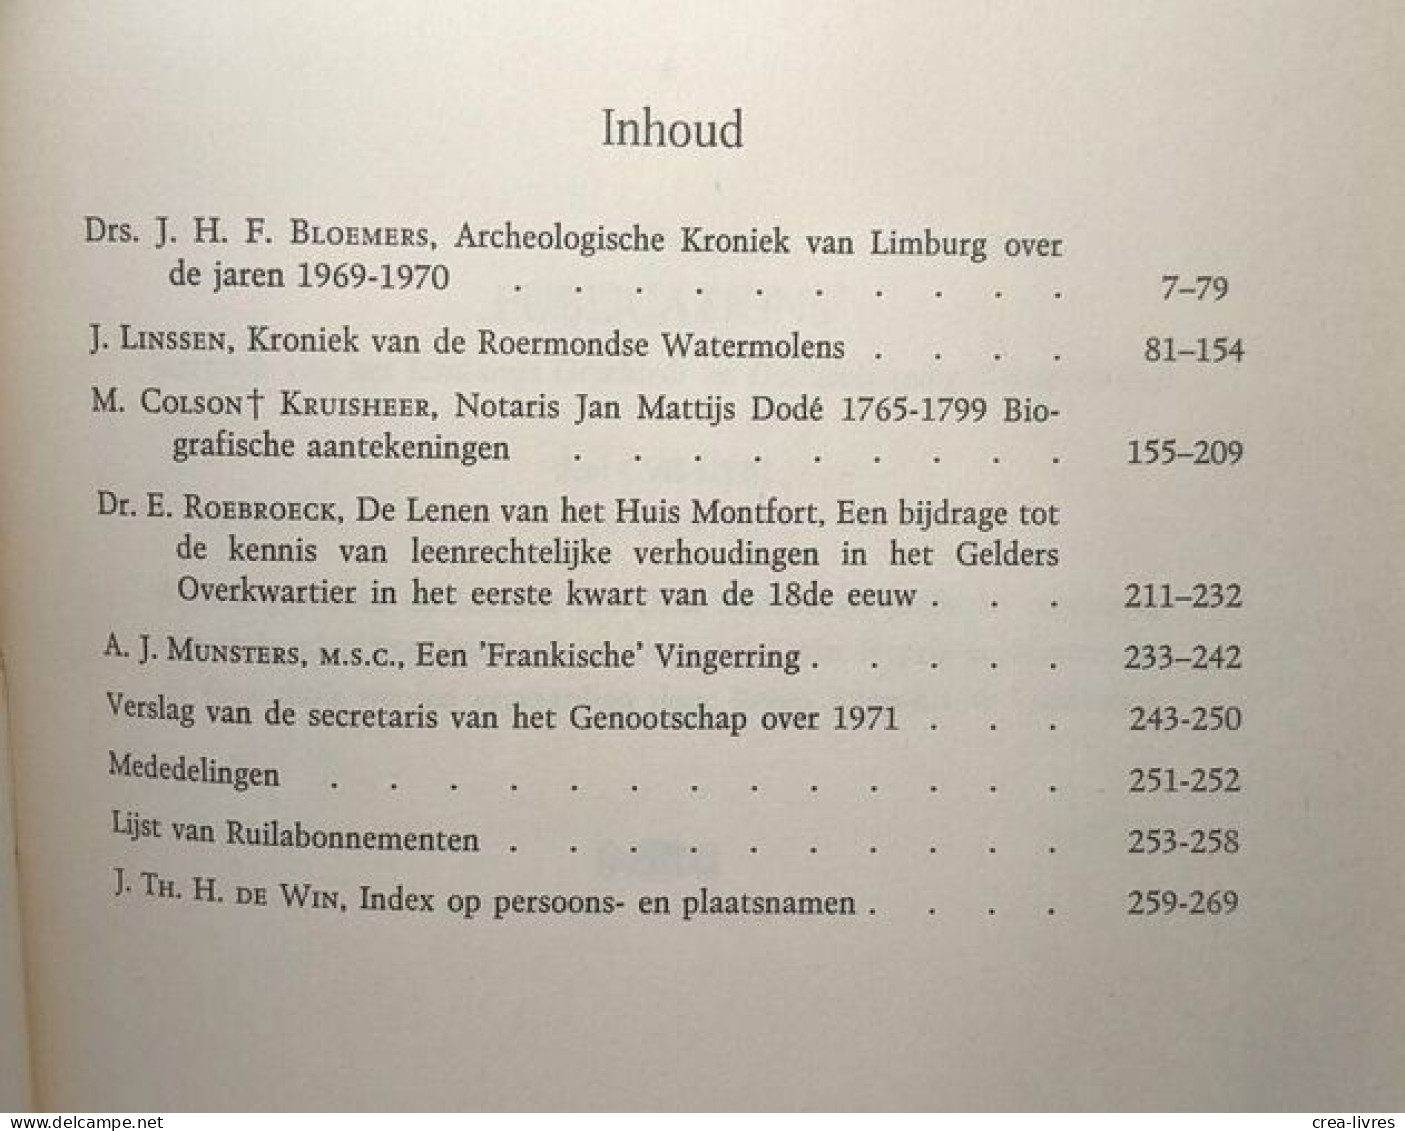 Publications De La Société Historique Et Archéologique Dans Le Limbourg Tome CVII - CVIII 1971 - 1972 "Vis Unita Major" - Archéologie